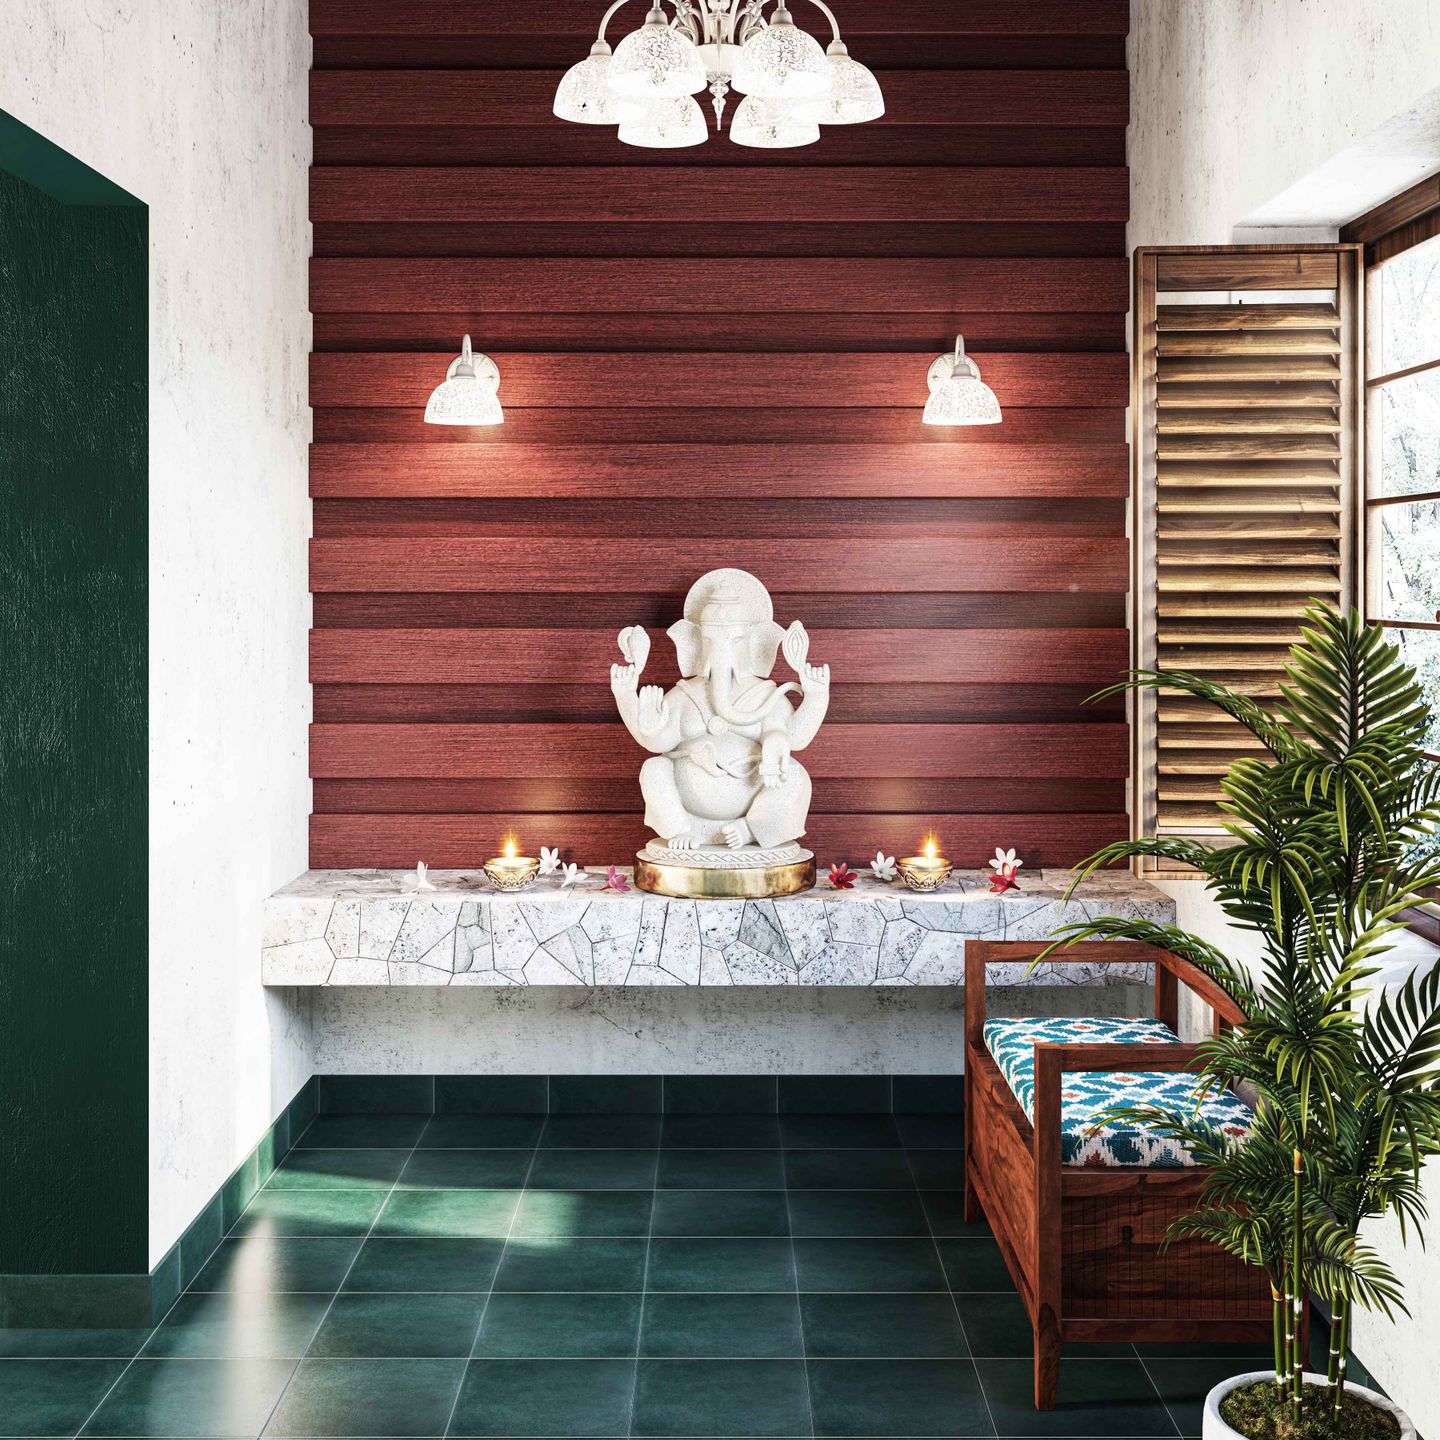 6x6 Ft Green Ceramic Flooring Design - Livspace